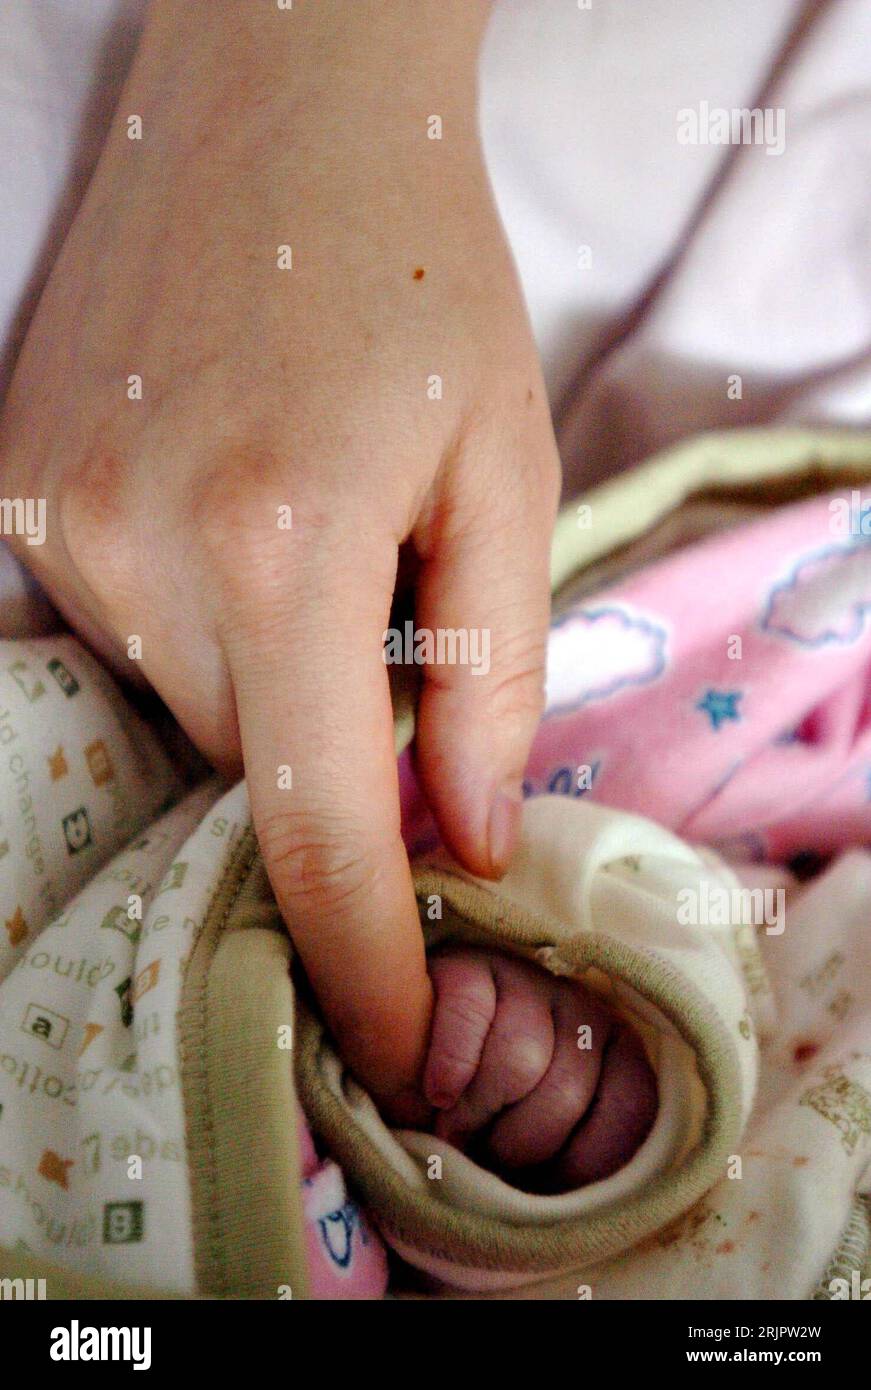 Bildnummer: 51238327 Datum: 13.05.2006 Copyright: imago/Xinhua Hand eines Neugeborenen hält den Finger der Mutter in einem Krankenhaus in Taiyuan in der chinesischen Provinz Shanxi - PUBLICATIONxNOTxINxCHN, Körperteile; 2006, Taiyuan, Mutter, Mütter, Neugeborene, Neugeborenes, kind, Kinder, Kleinkind, Kleinkinder, Baby, Babys, Säugling, Säuglinge,; , hoch, Kbdig, China / Gruppenbild, Harmonie, Geborgenheit Foto Stock